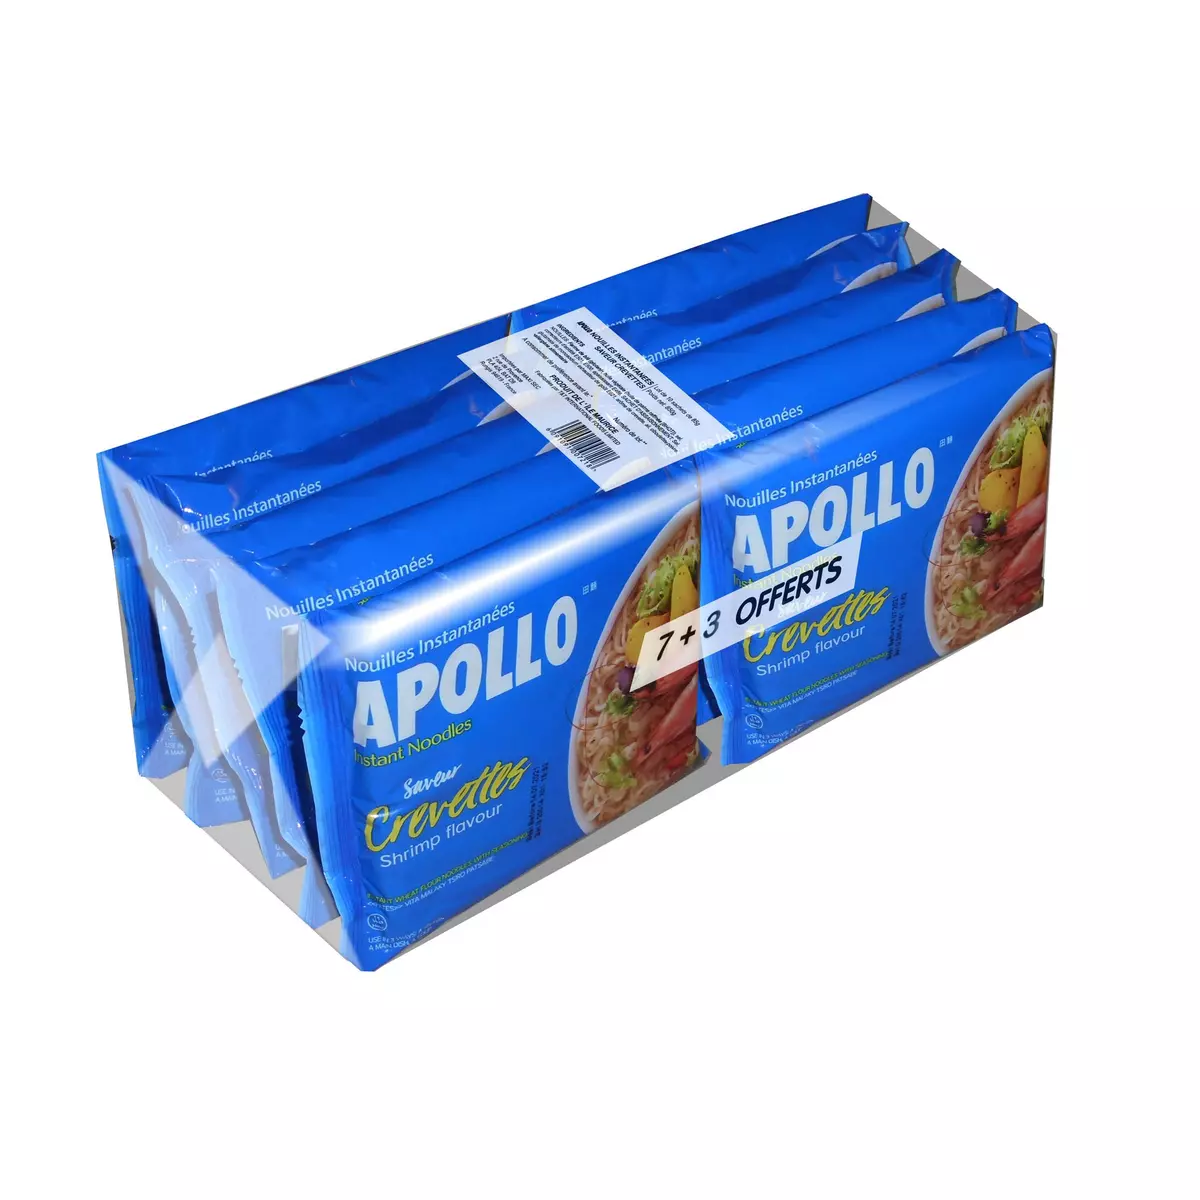 APOLLO Nouilles instantanées saveur crevettes 7+3 offerts 10x85g